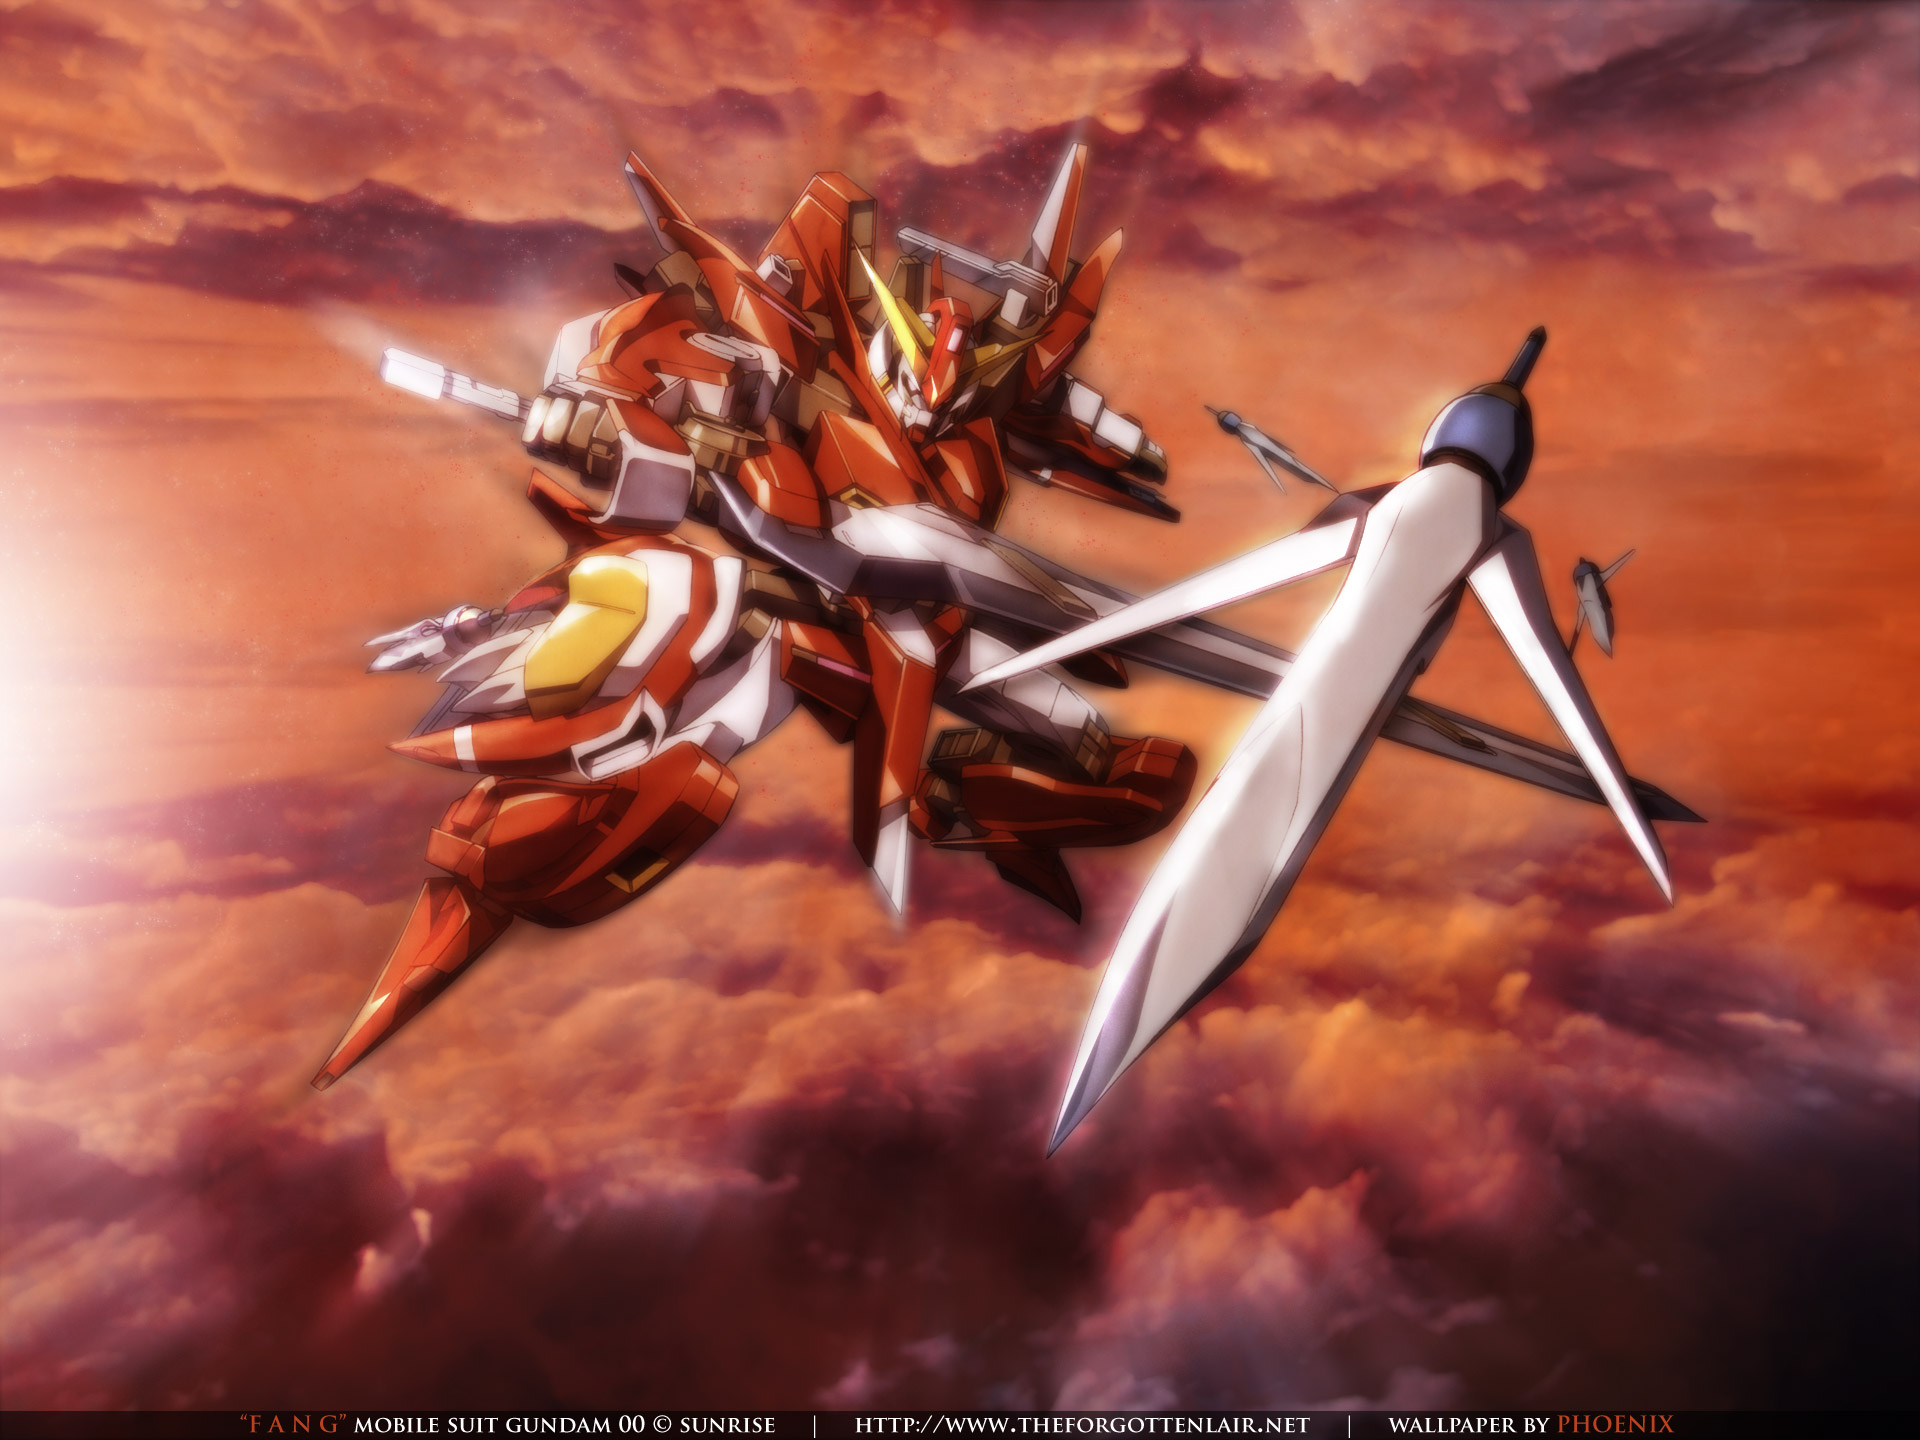 The Forgotten Lair Mobile Suit Gundam 00 Desktop Wallpapers Images, Photos, Reviews